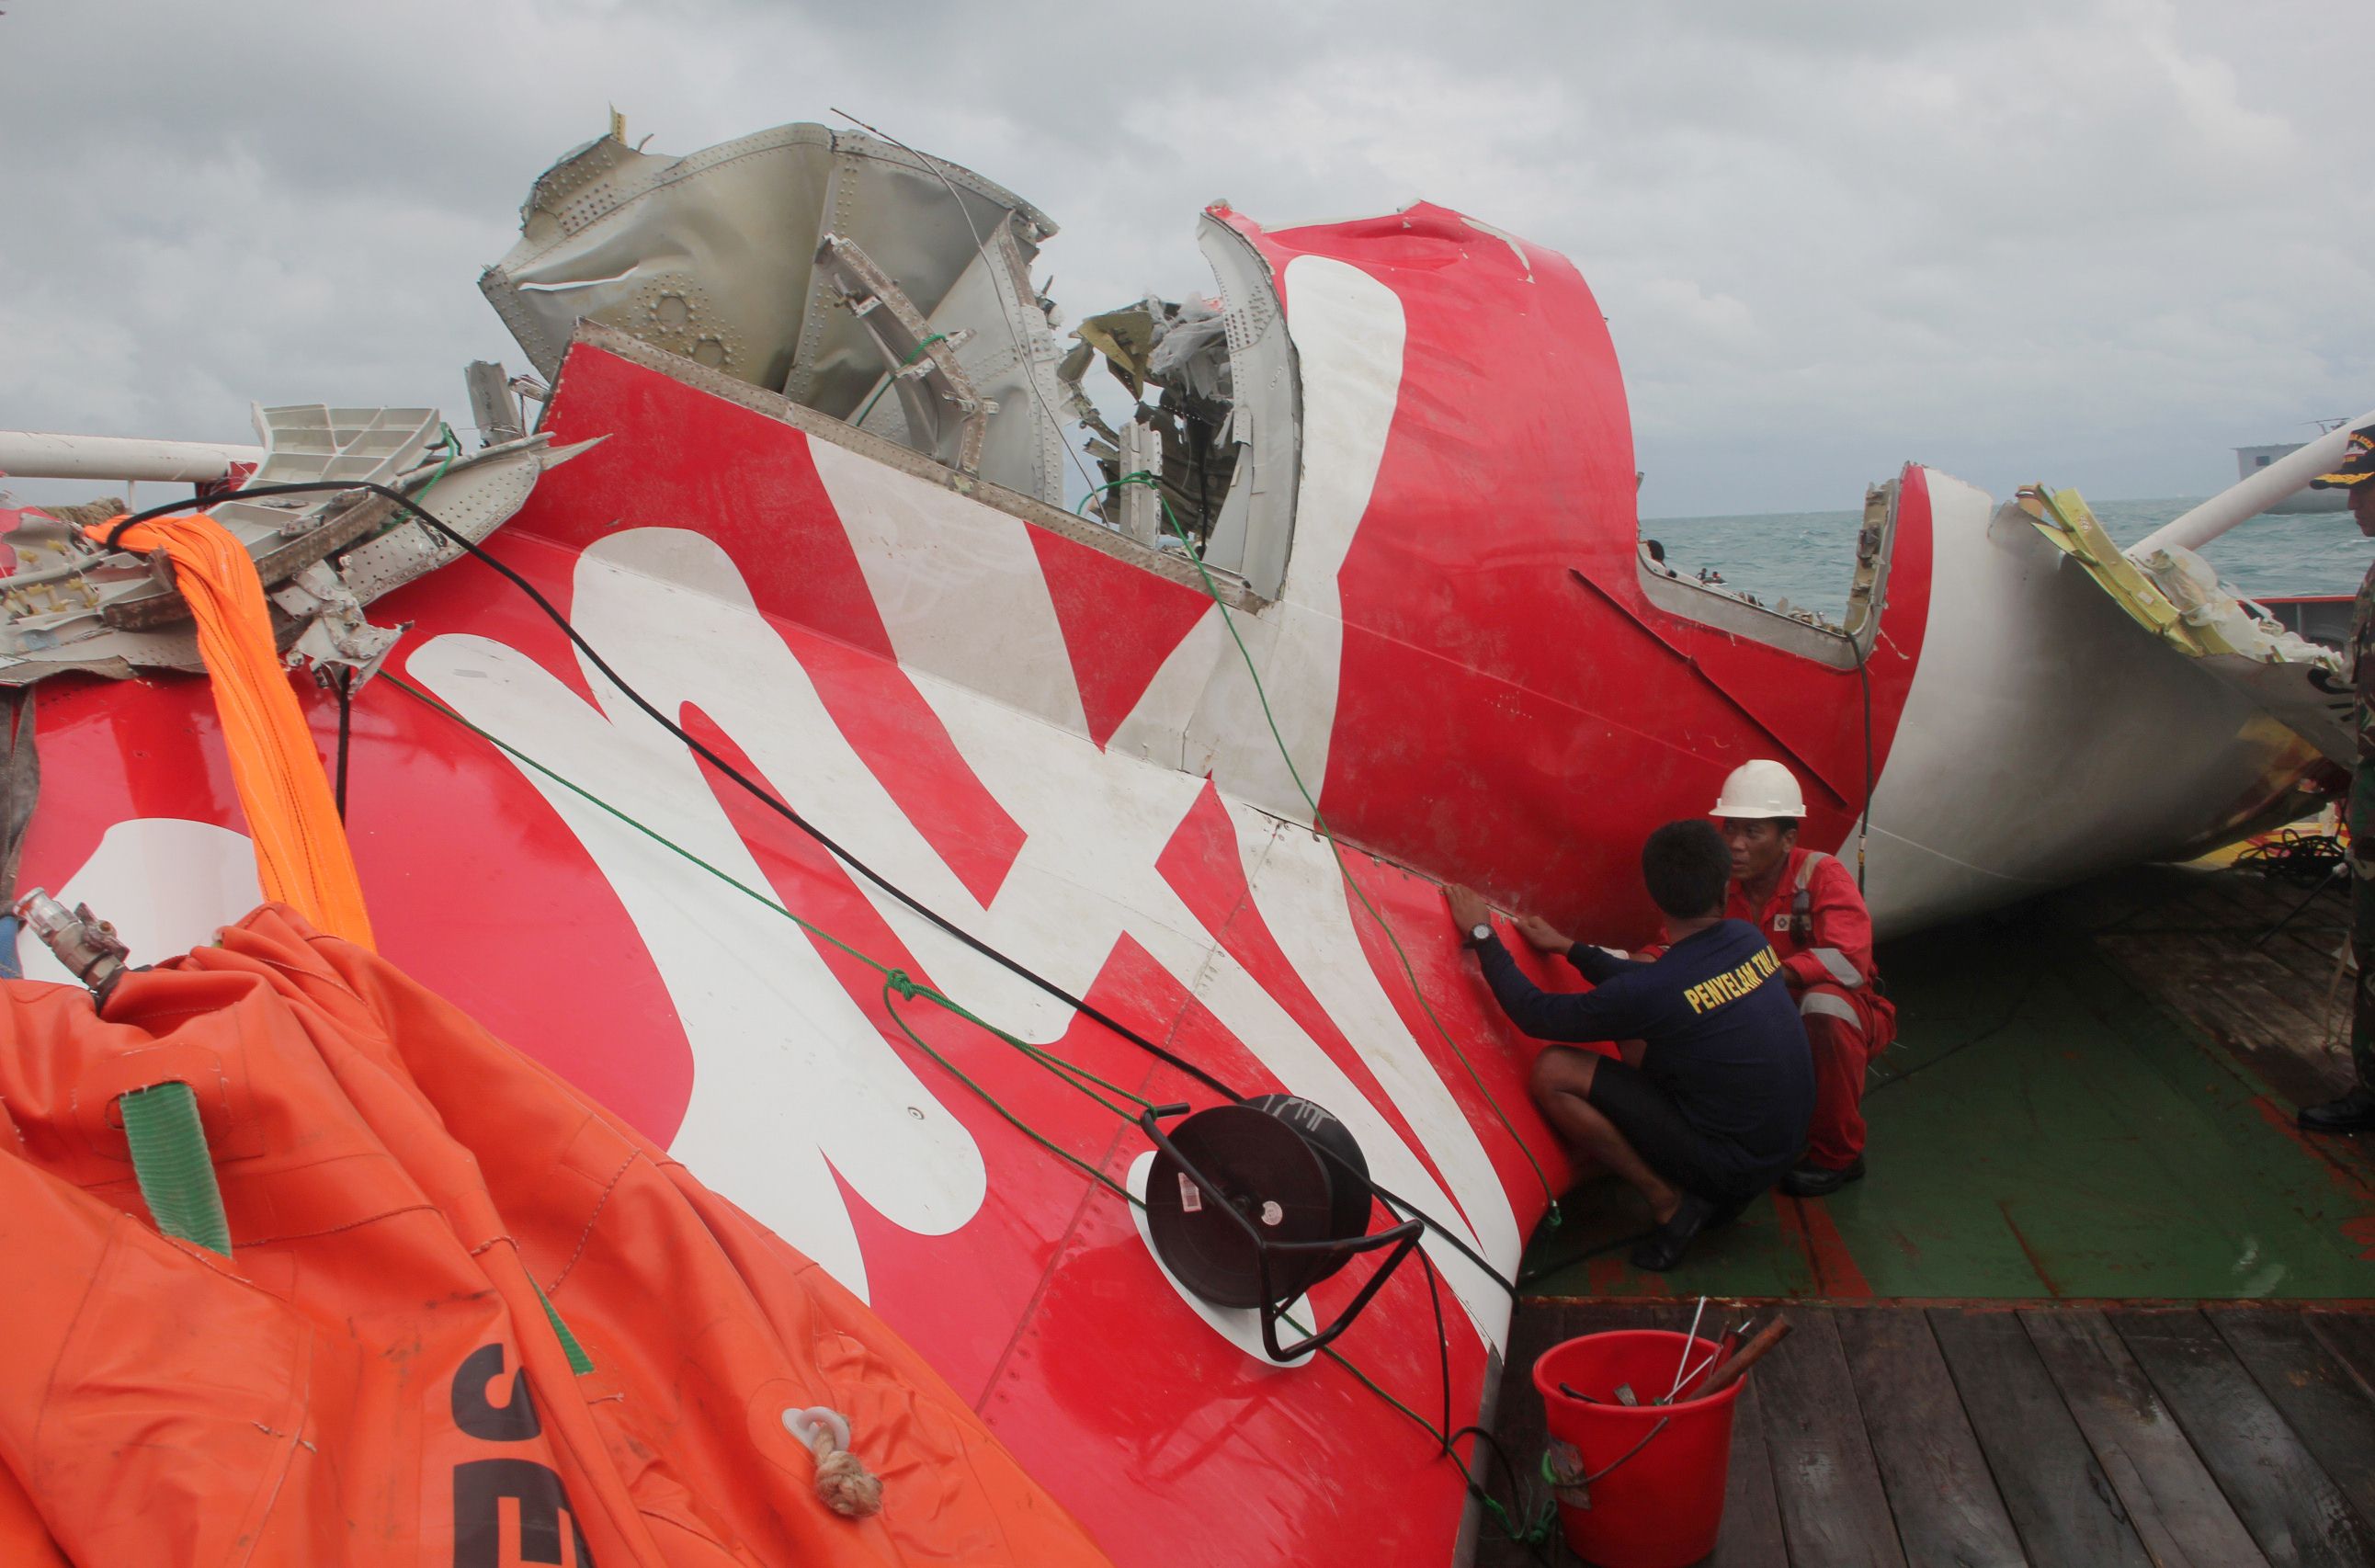 Thợ lặn Indonesia đã tìm thấy 5 thi thể nạn nhân trong vụ rơi máy bay QZ8501